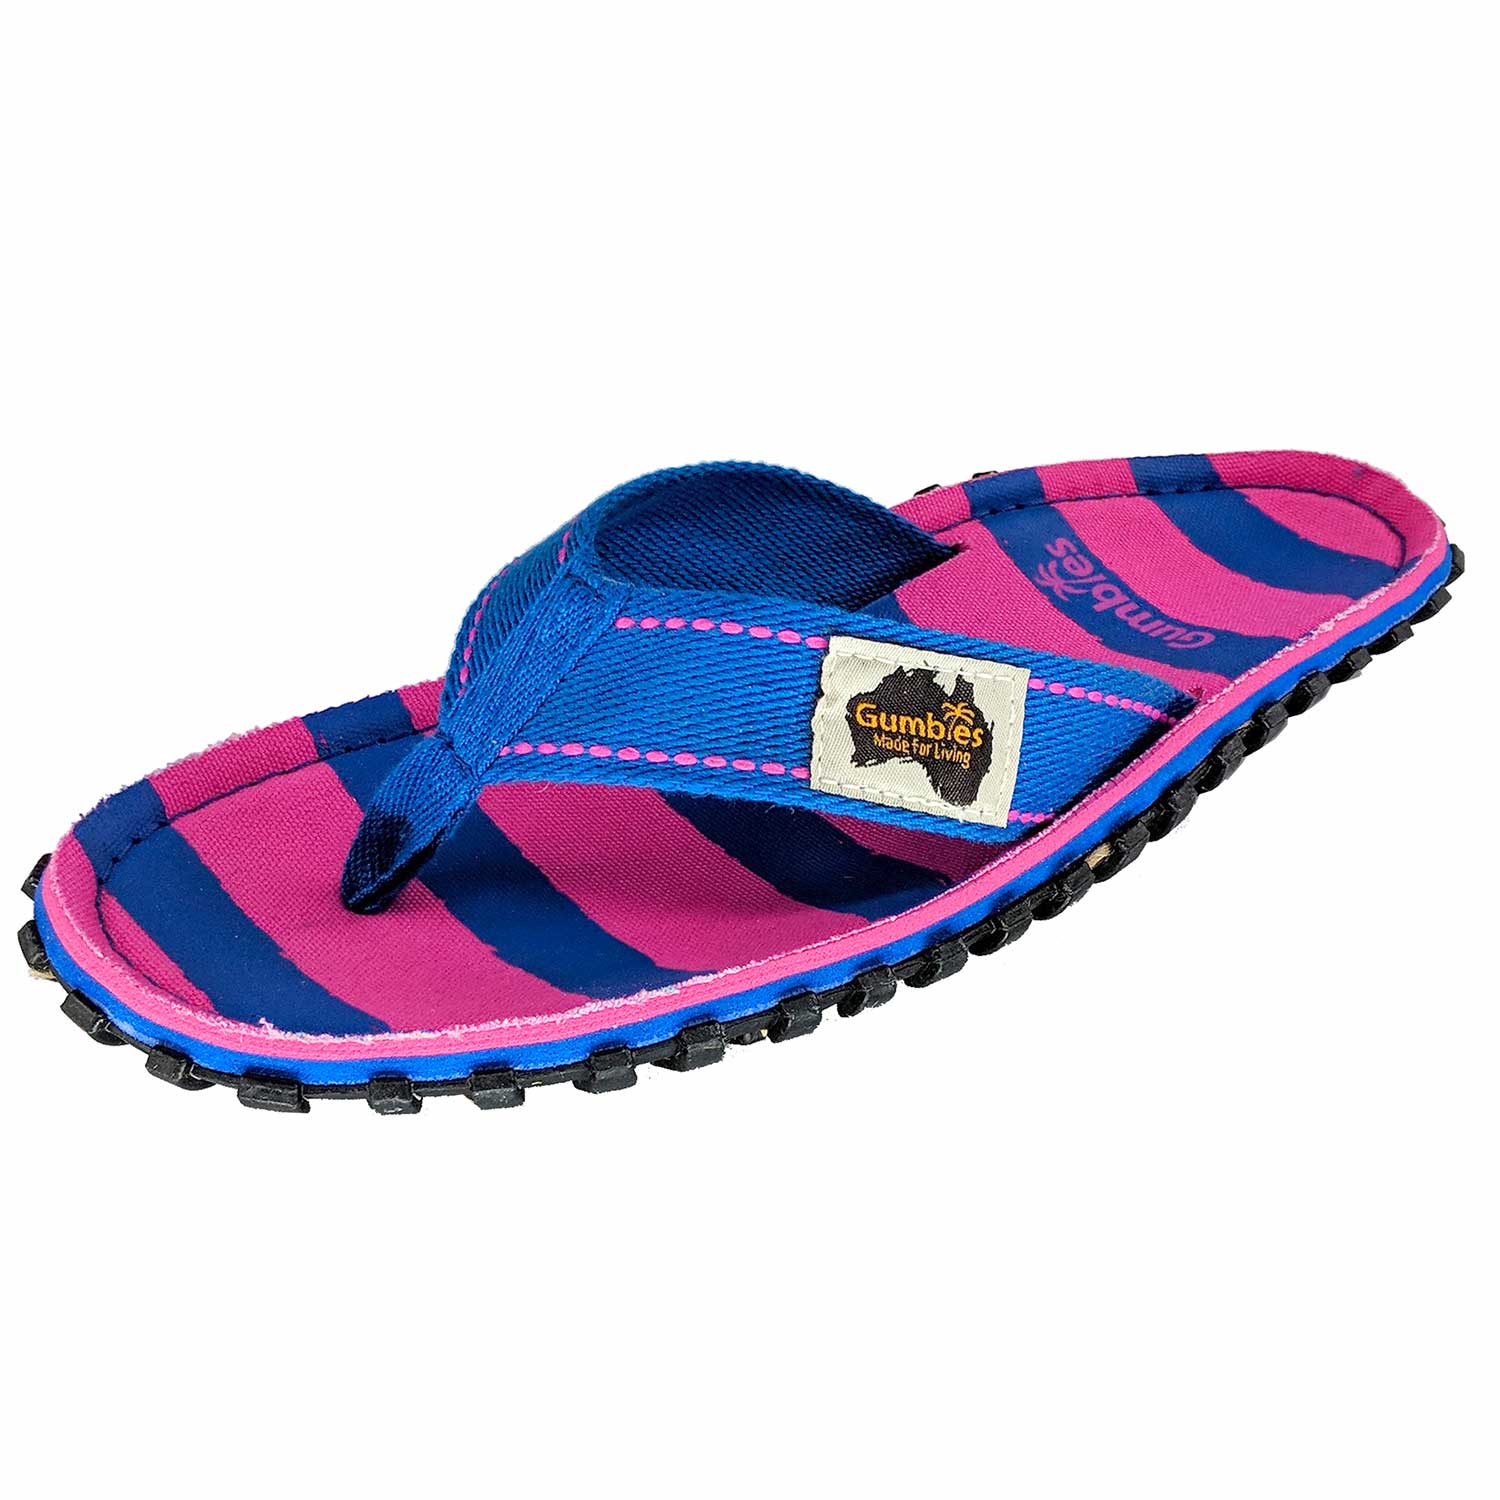 Islander Thongs - Women's - Blue & Pink Stripe